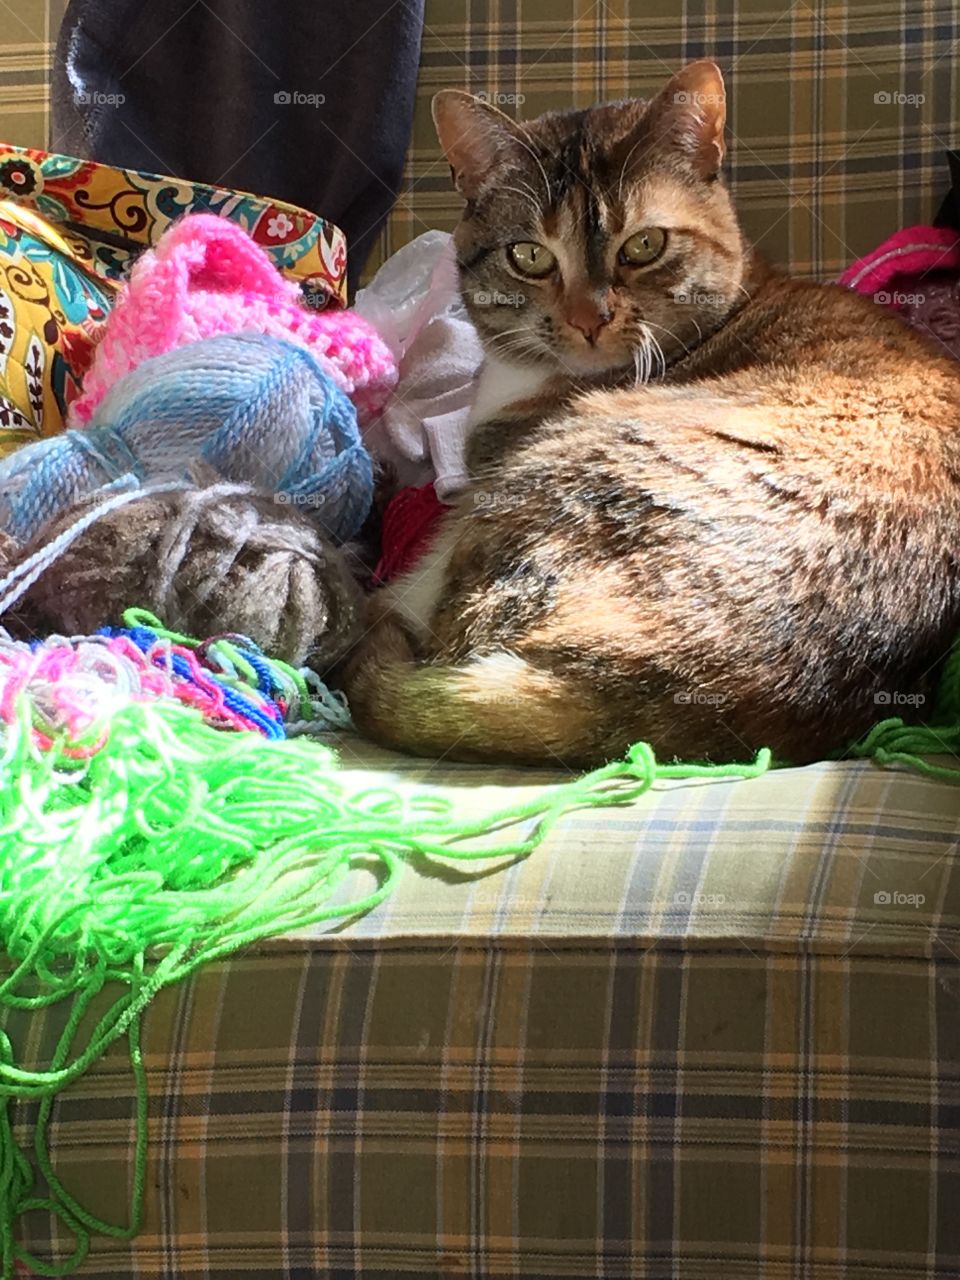 Knitty kitty